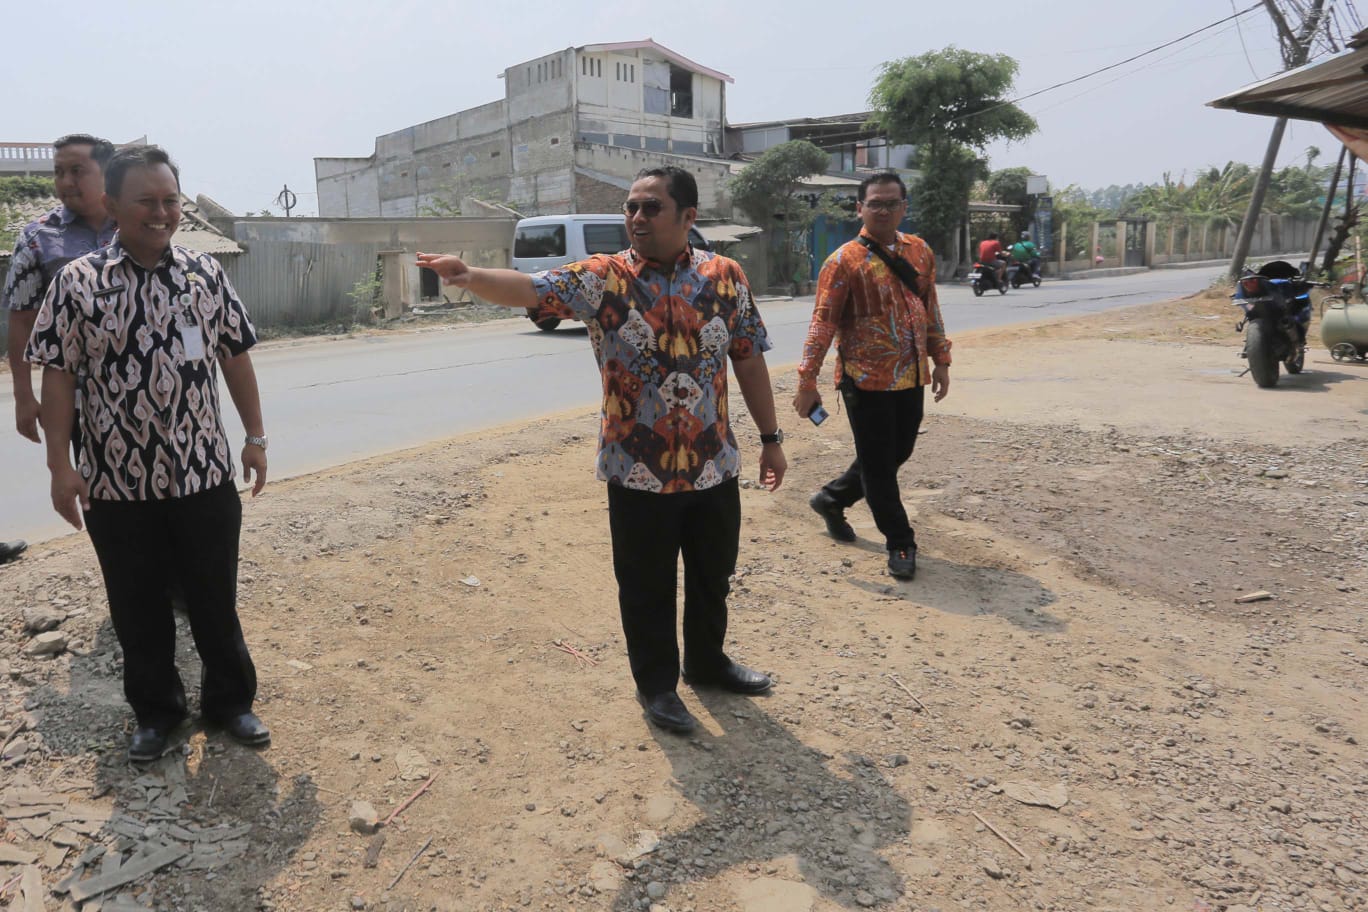 Wali Kota Tangerang, Arief R Wismansyah bersama jajaran saat mengunjungi lokasi kamacetan lalulintas di wilayah Rawa Bokor Kecamatan Benda, Kota Tangerang